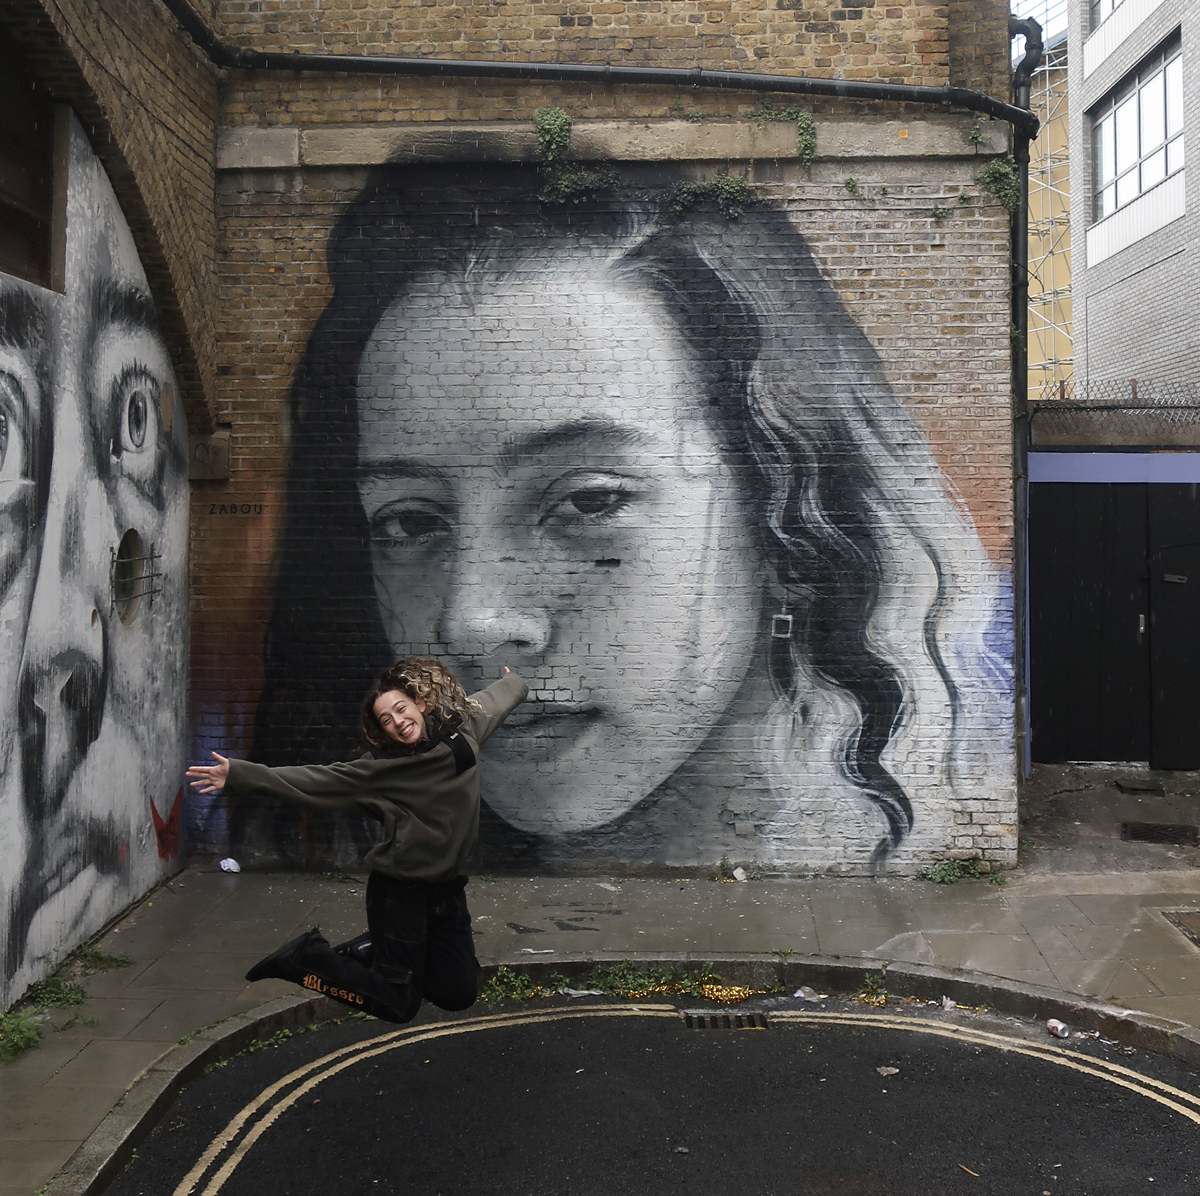 Street art portrait by Zabou in Hoxton